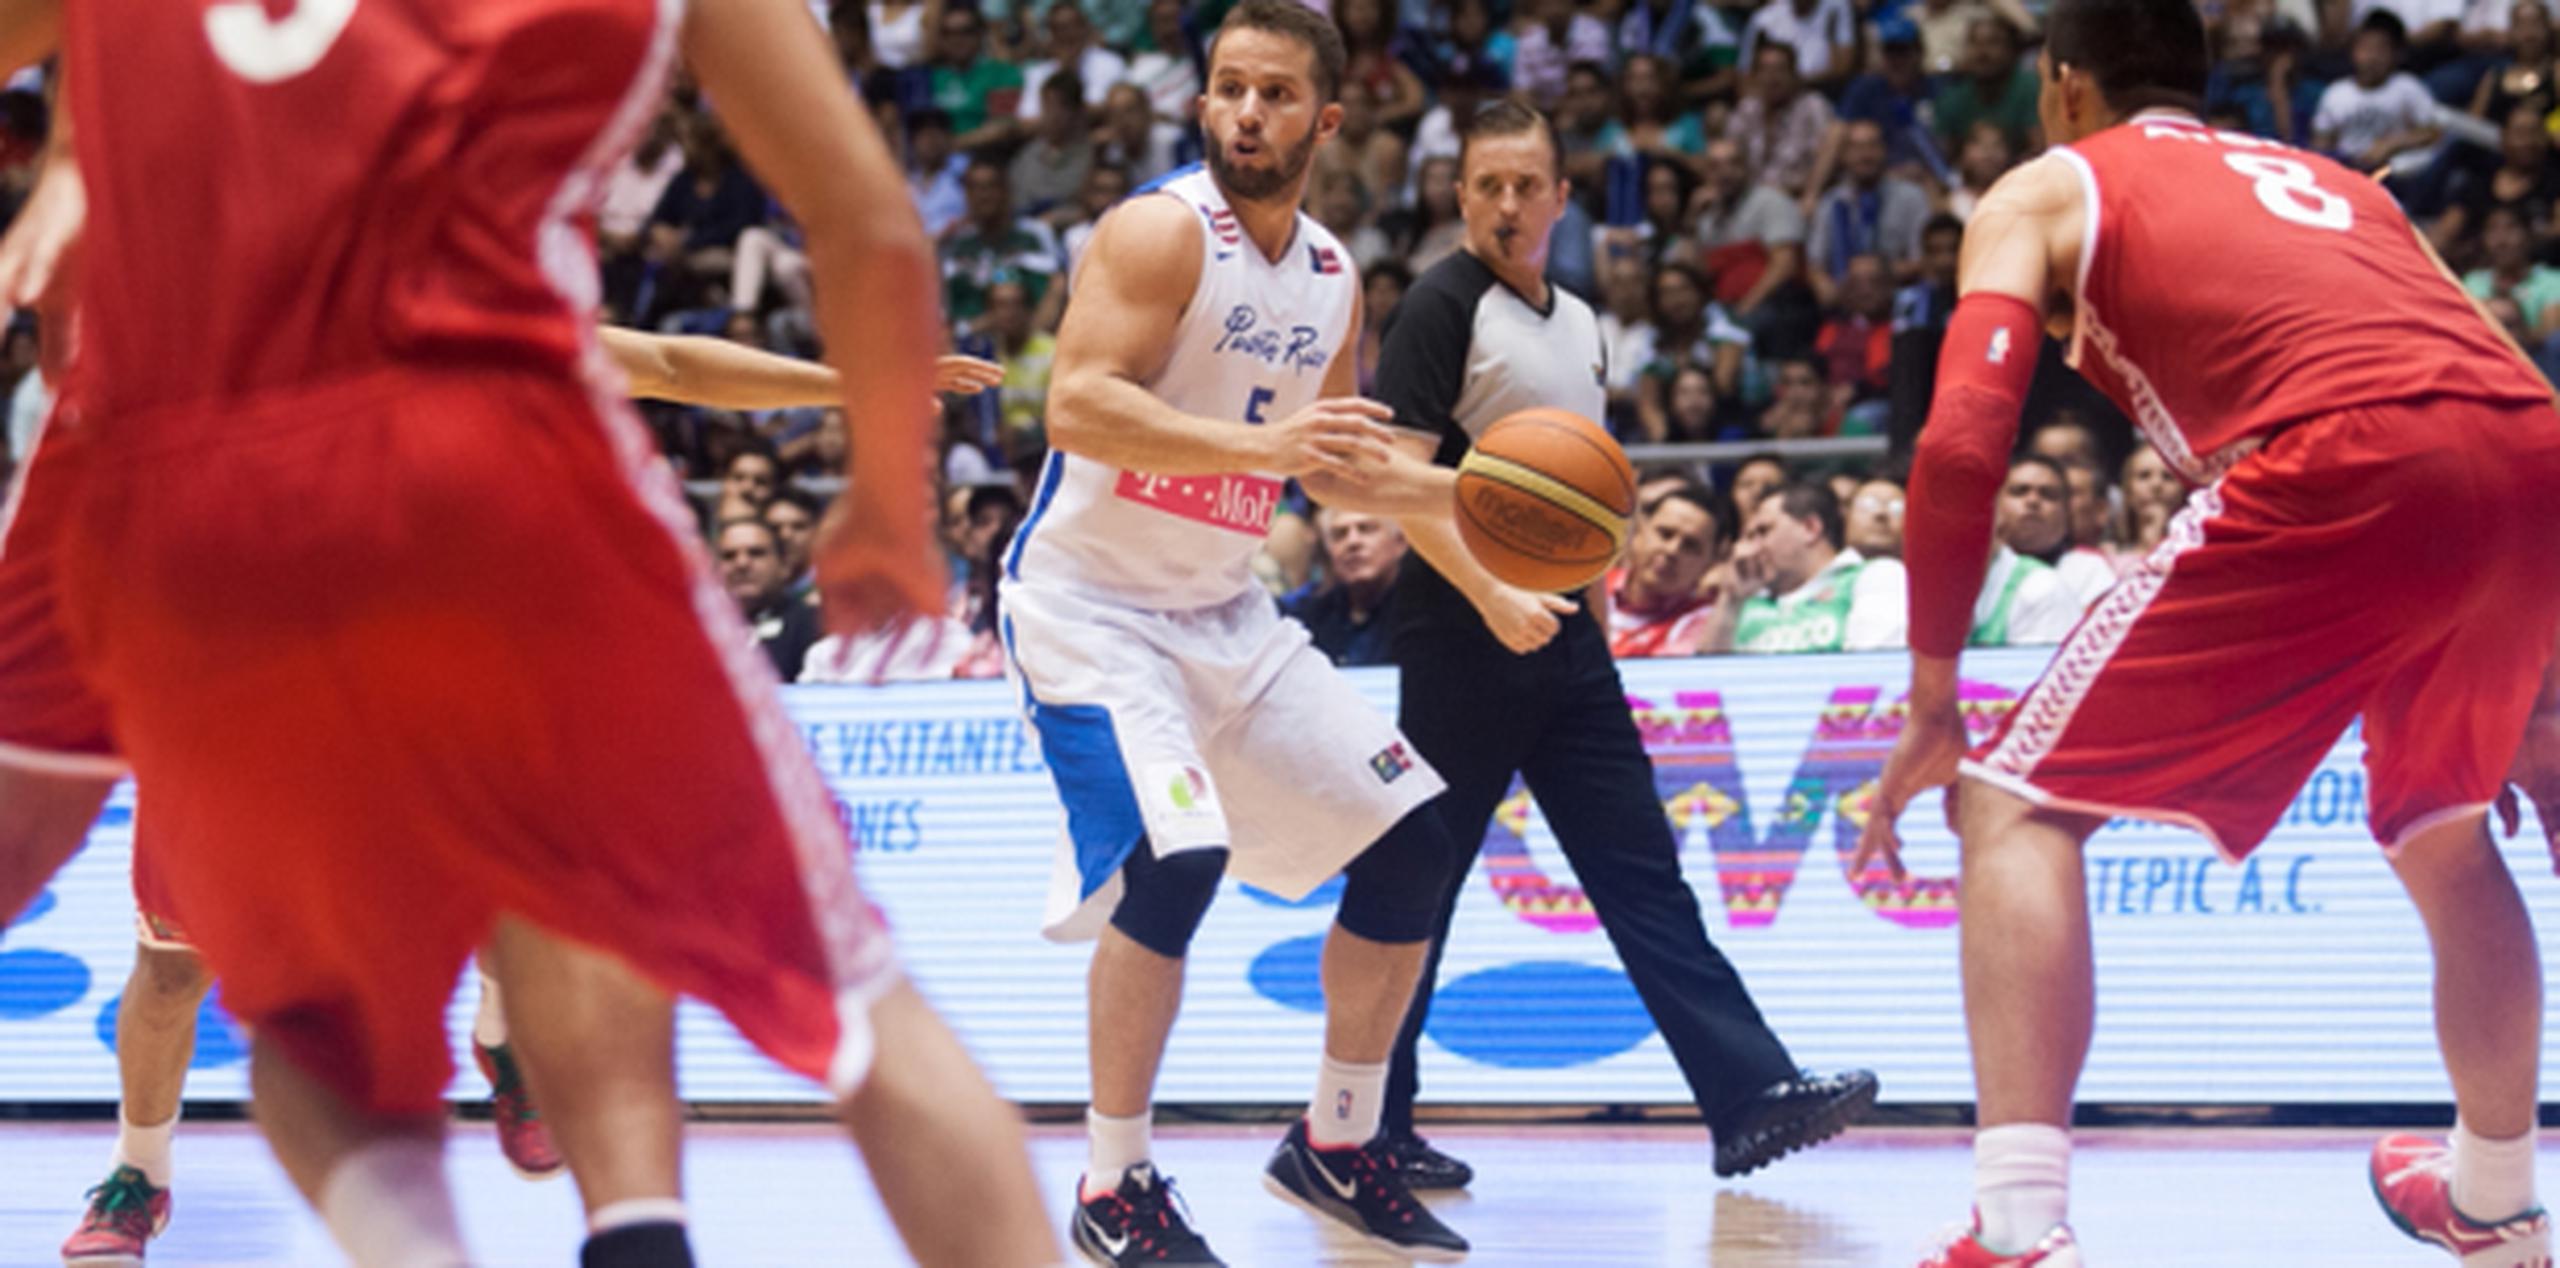 La última edición del Centrobasket, celebrada en el 2014 en México, fue ganada por la selección azteca, Puerto Rico obtuvo plata y República Dominicana la medalla de bronce. (Archivo)